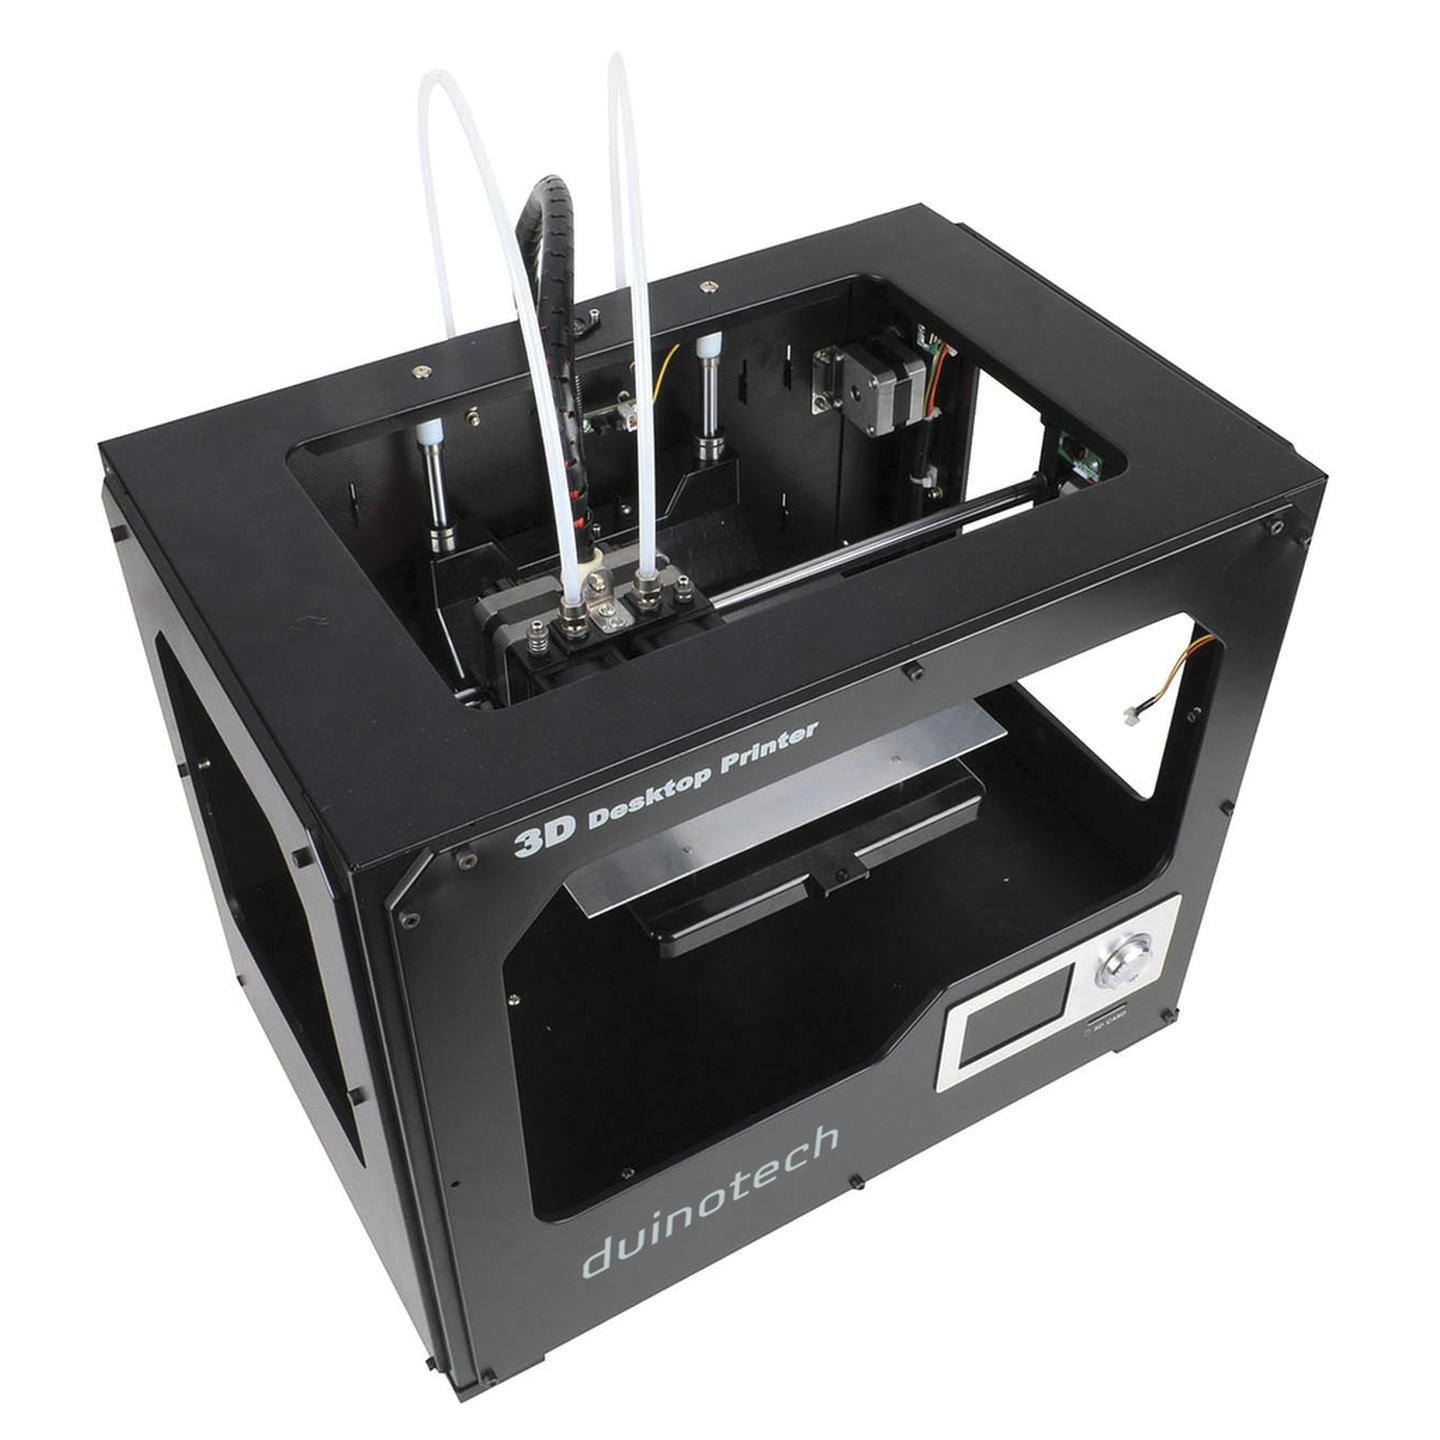 Pre-built Dual Filament 3D Printer